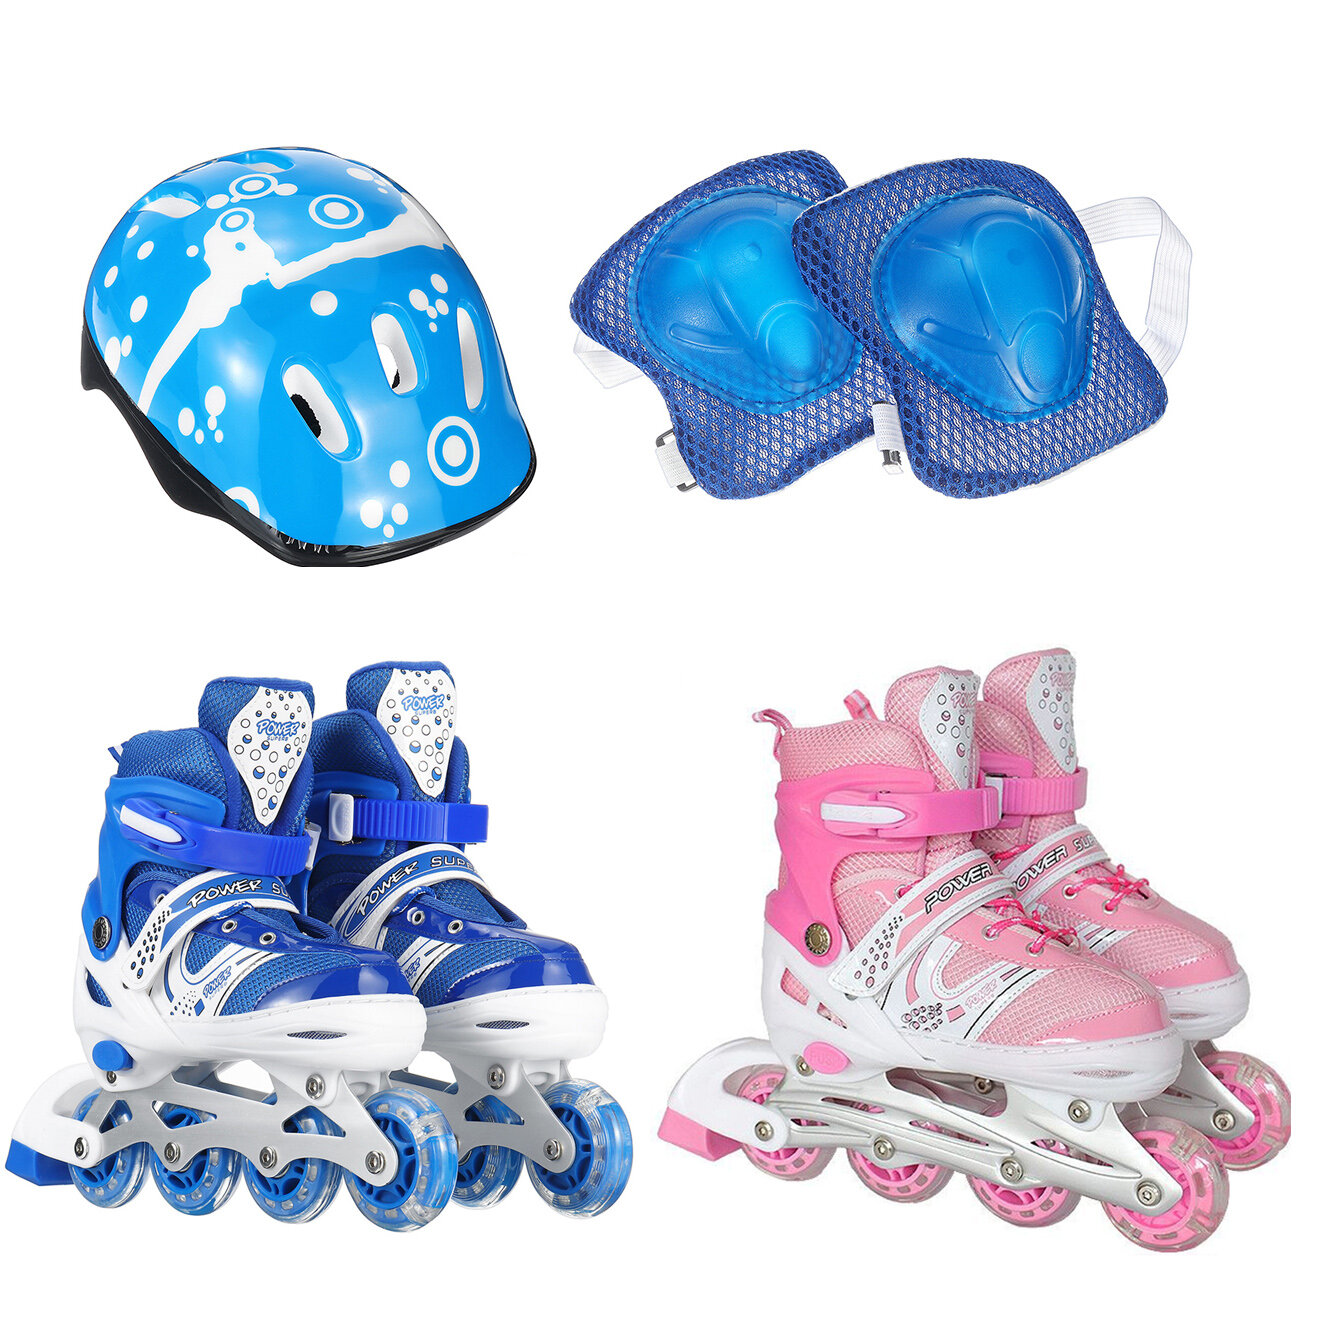 مجموعة أحذية تزلج قابلة للتعديل للأطفال مفرد Flash أحذية تزلج على الجليد للفتيان والفتيات أحذية مضمنة للمبتدئين